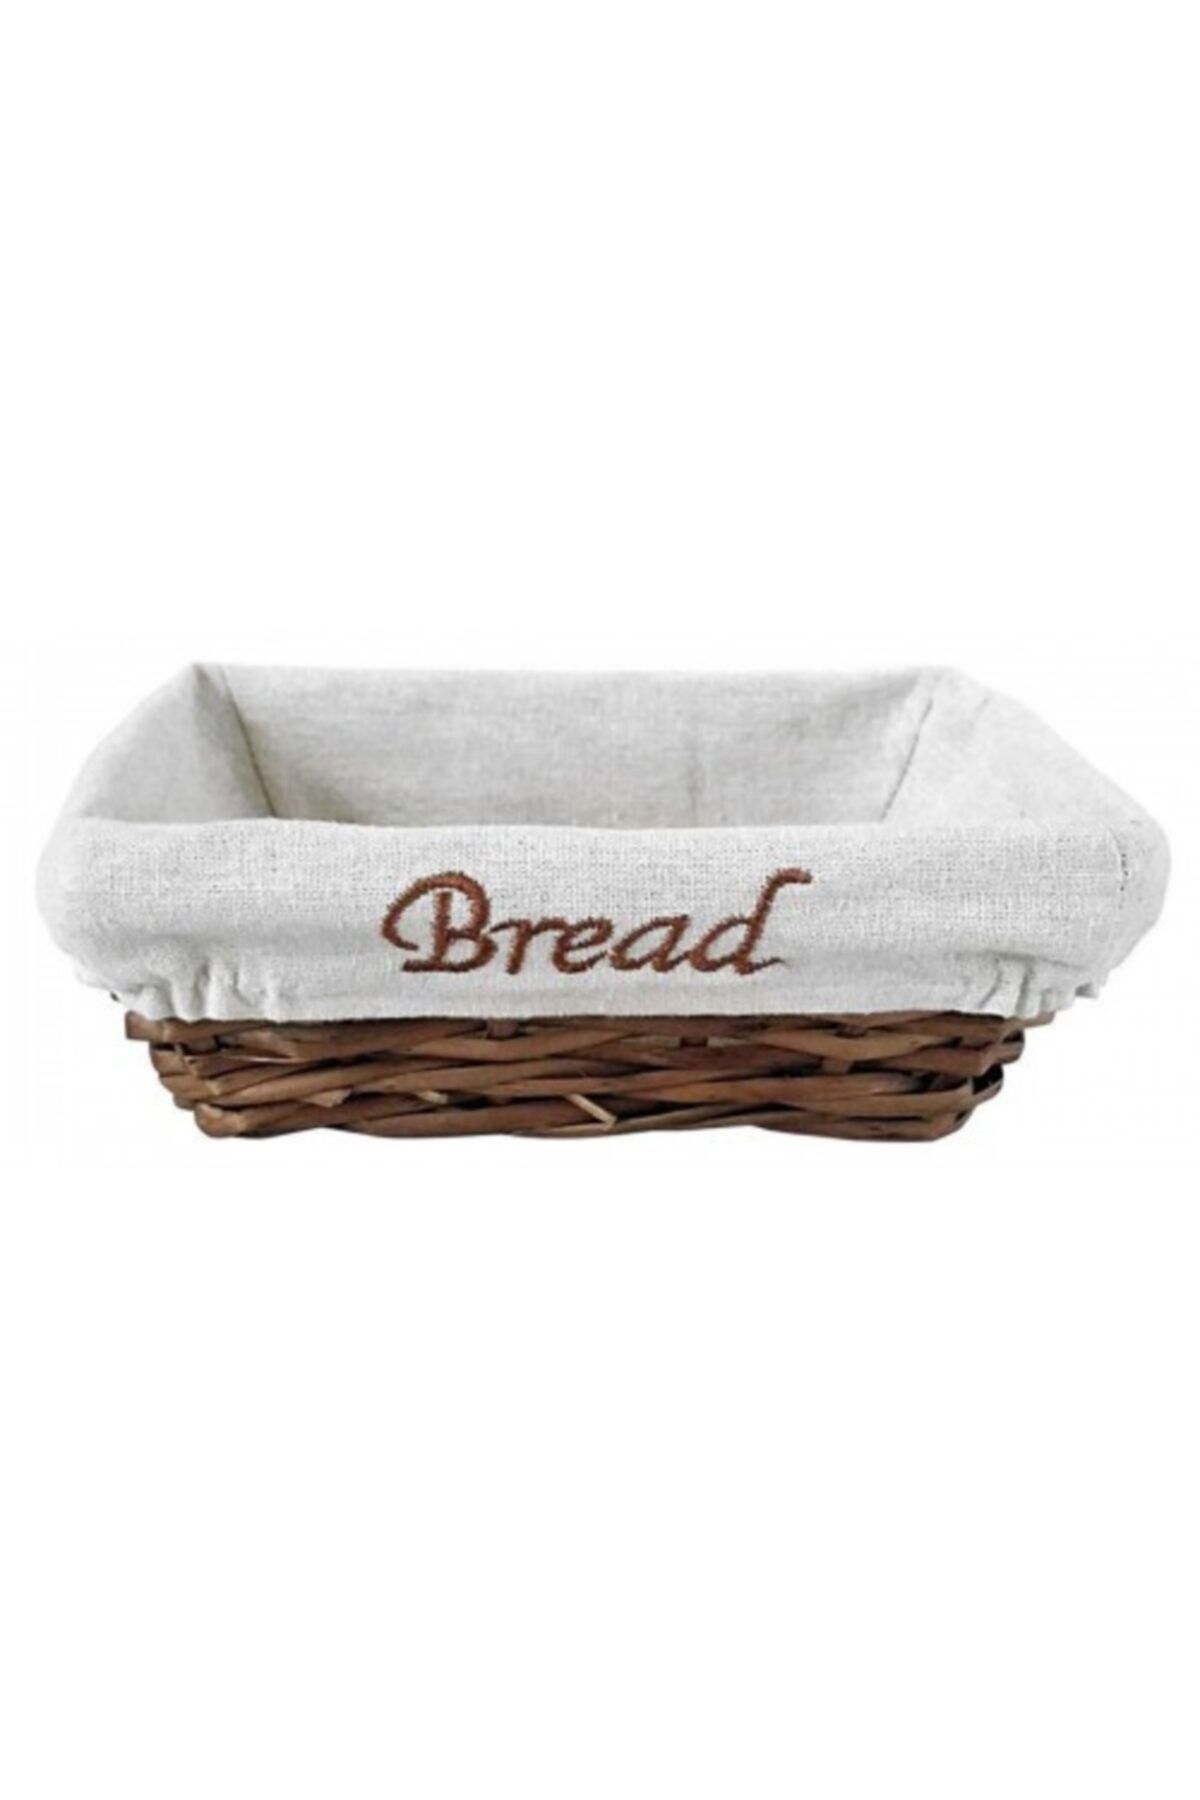 Genel Markalar Groovy Ekmek Sepetı Hasır Bezlı Dıkdortgen 22*16*7 cm